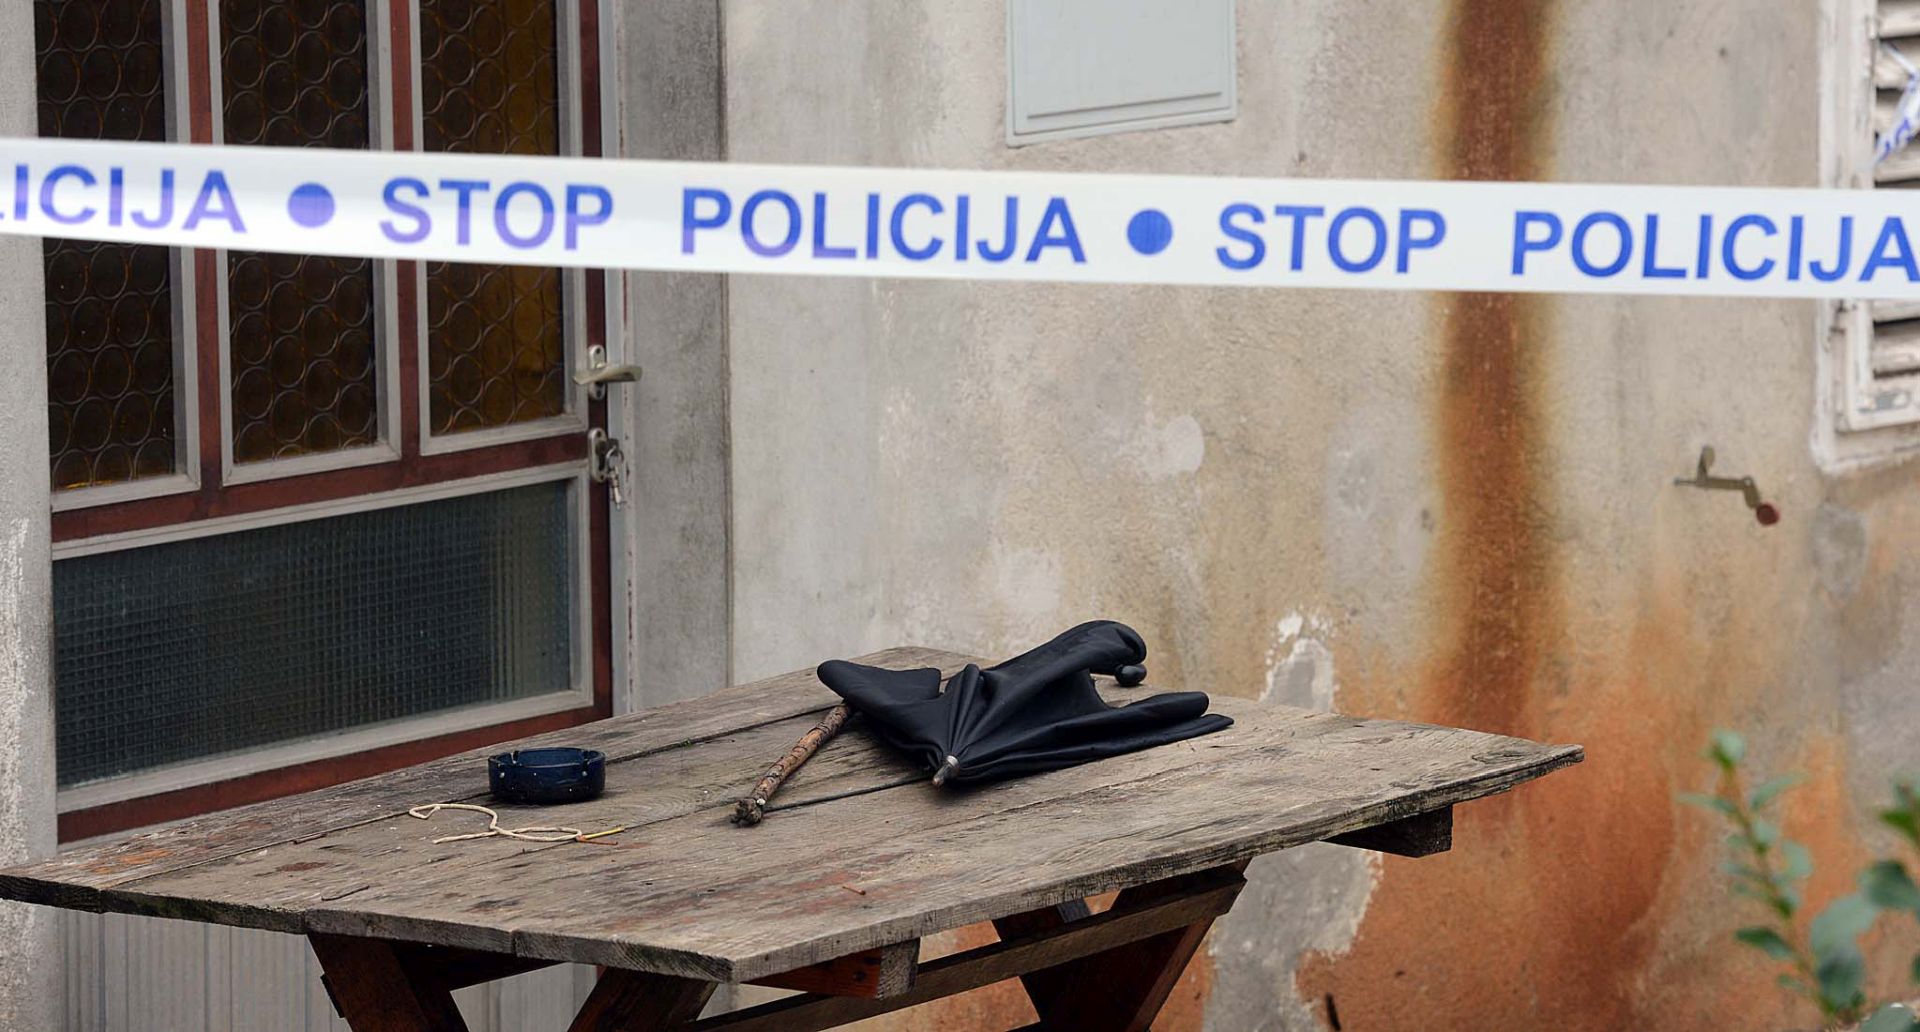 Galovac, 11.11.2013 - Zadarska policija sinoæ je, nakon dojave, u kuæi u Galovcu kod Zadra pronala mrtvo tijelo 85-godinje ene, a sumnja da je ubijena. Na slici pripadnici policije tijekom oèevida.
foto FaH/ ds